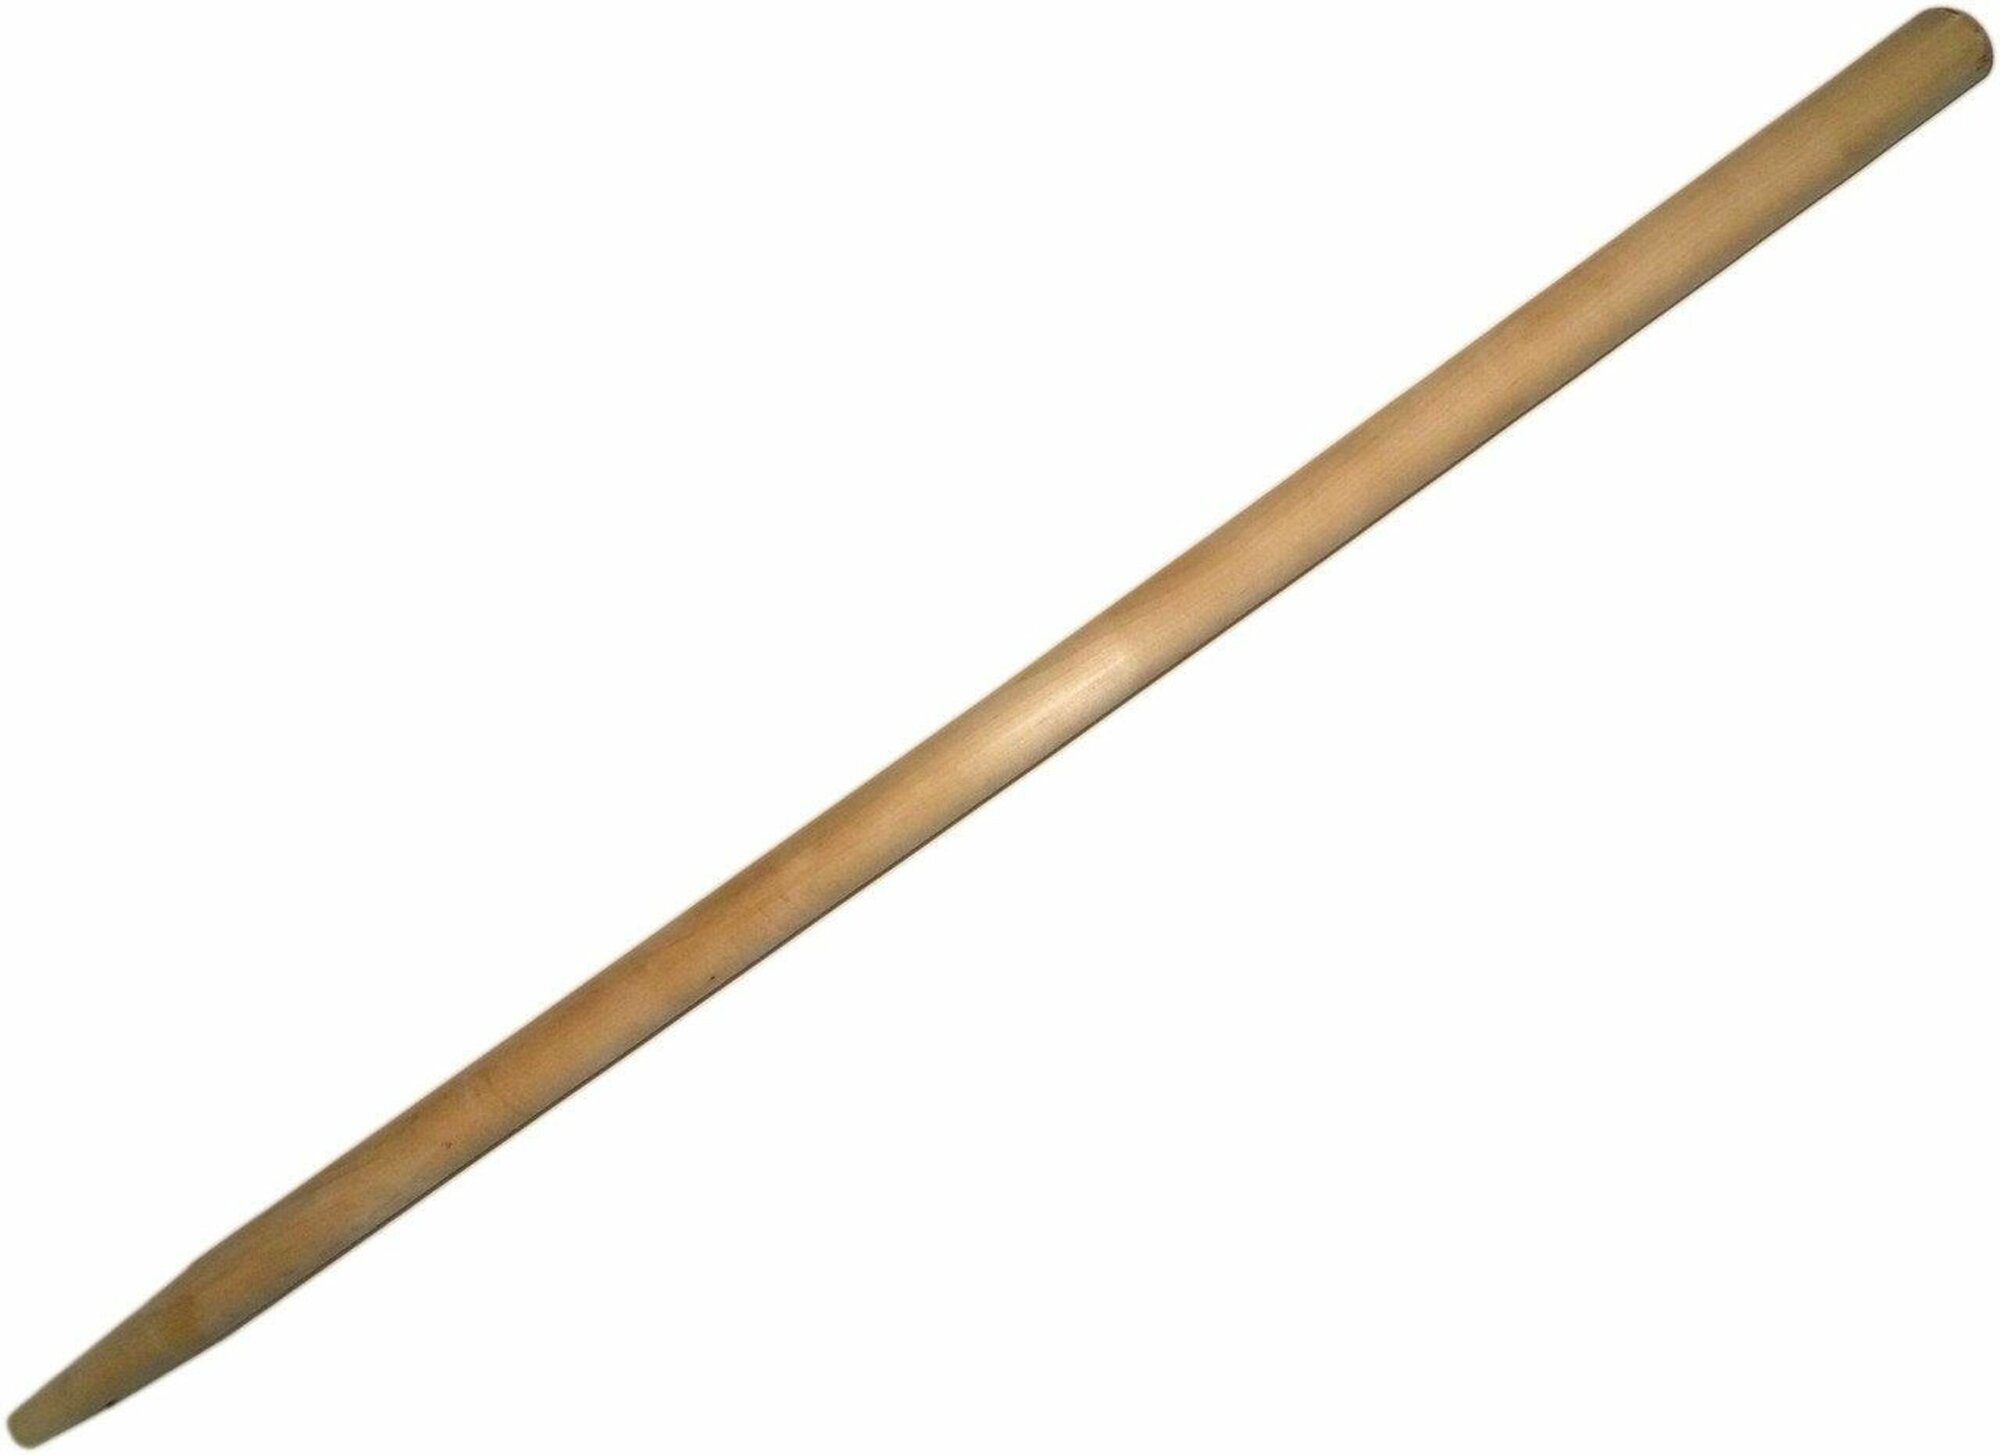 Черенок для лопаты (3 шт), диаметр 3,2 см, длина 140 см - запасная, комплектующая часть садовой, совковой или штыковой лопаты, граблей. - фотография № 2